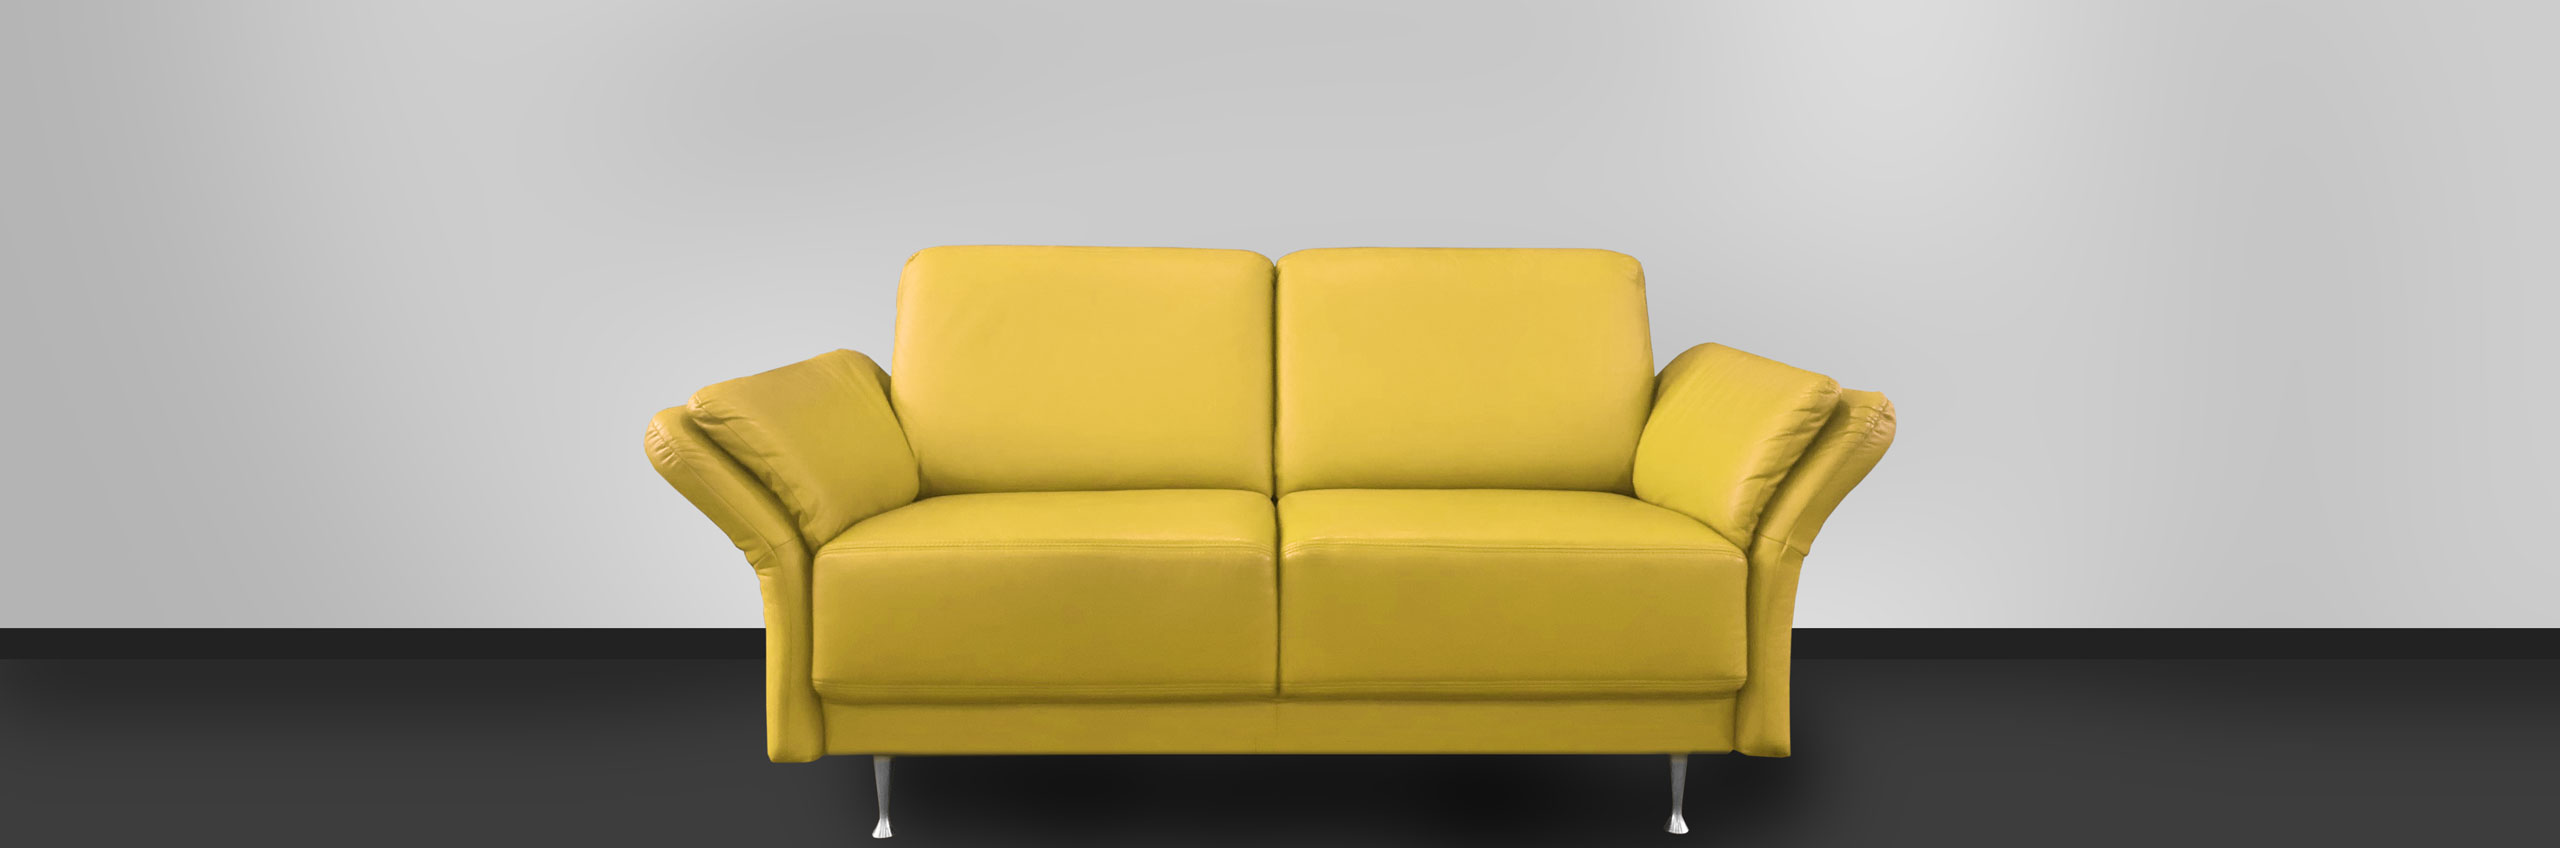 Bild Gelbes Sofa